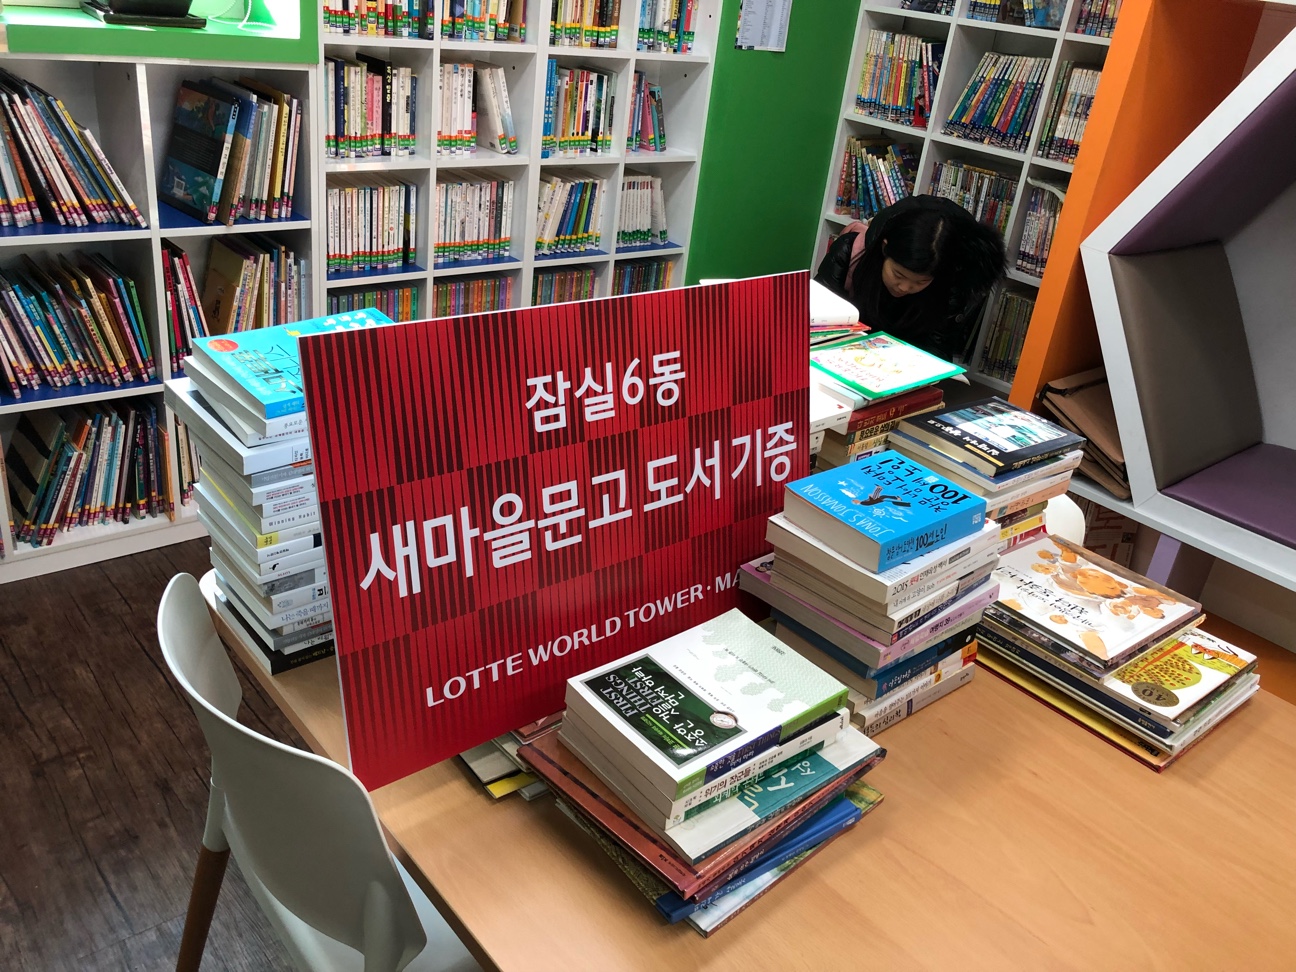 책 읽는 송파 캠페인의 일환으로 임직원분들이 소장하고 있었던 책 250권을 잠실6동 새마을문고에 기증하였습니다.